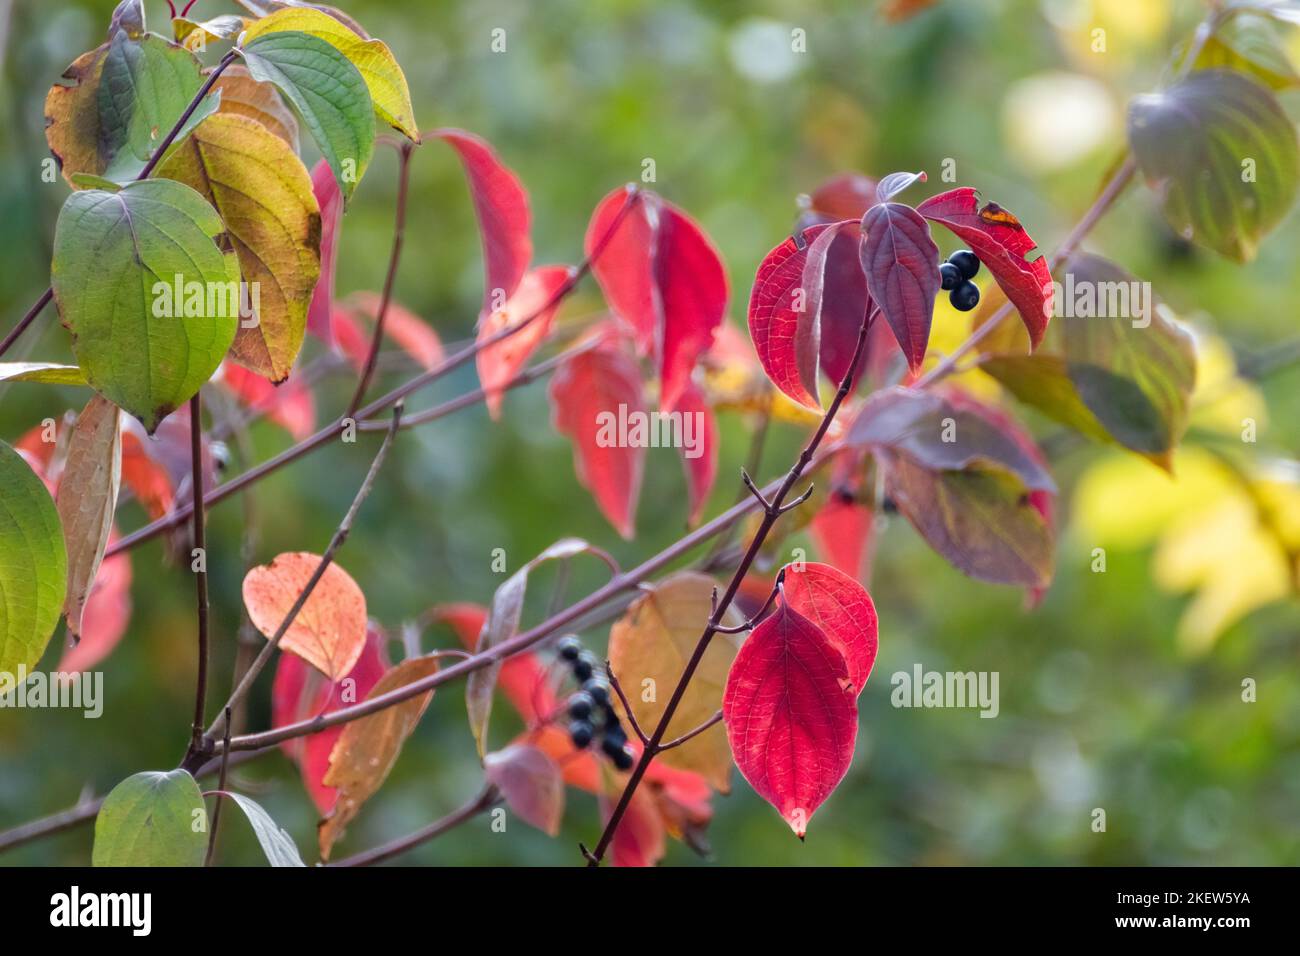 Cornus sanguinea, der gewöhnliche Dogwood-Strauch, verzweigt sich in Nahaufnahme mit dunklen schwarzen Beeren und roten Blättern. Herbstbotanik mit verschwommenem grünen Hintergrund Stockfoto